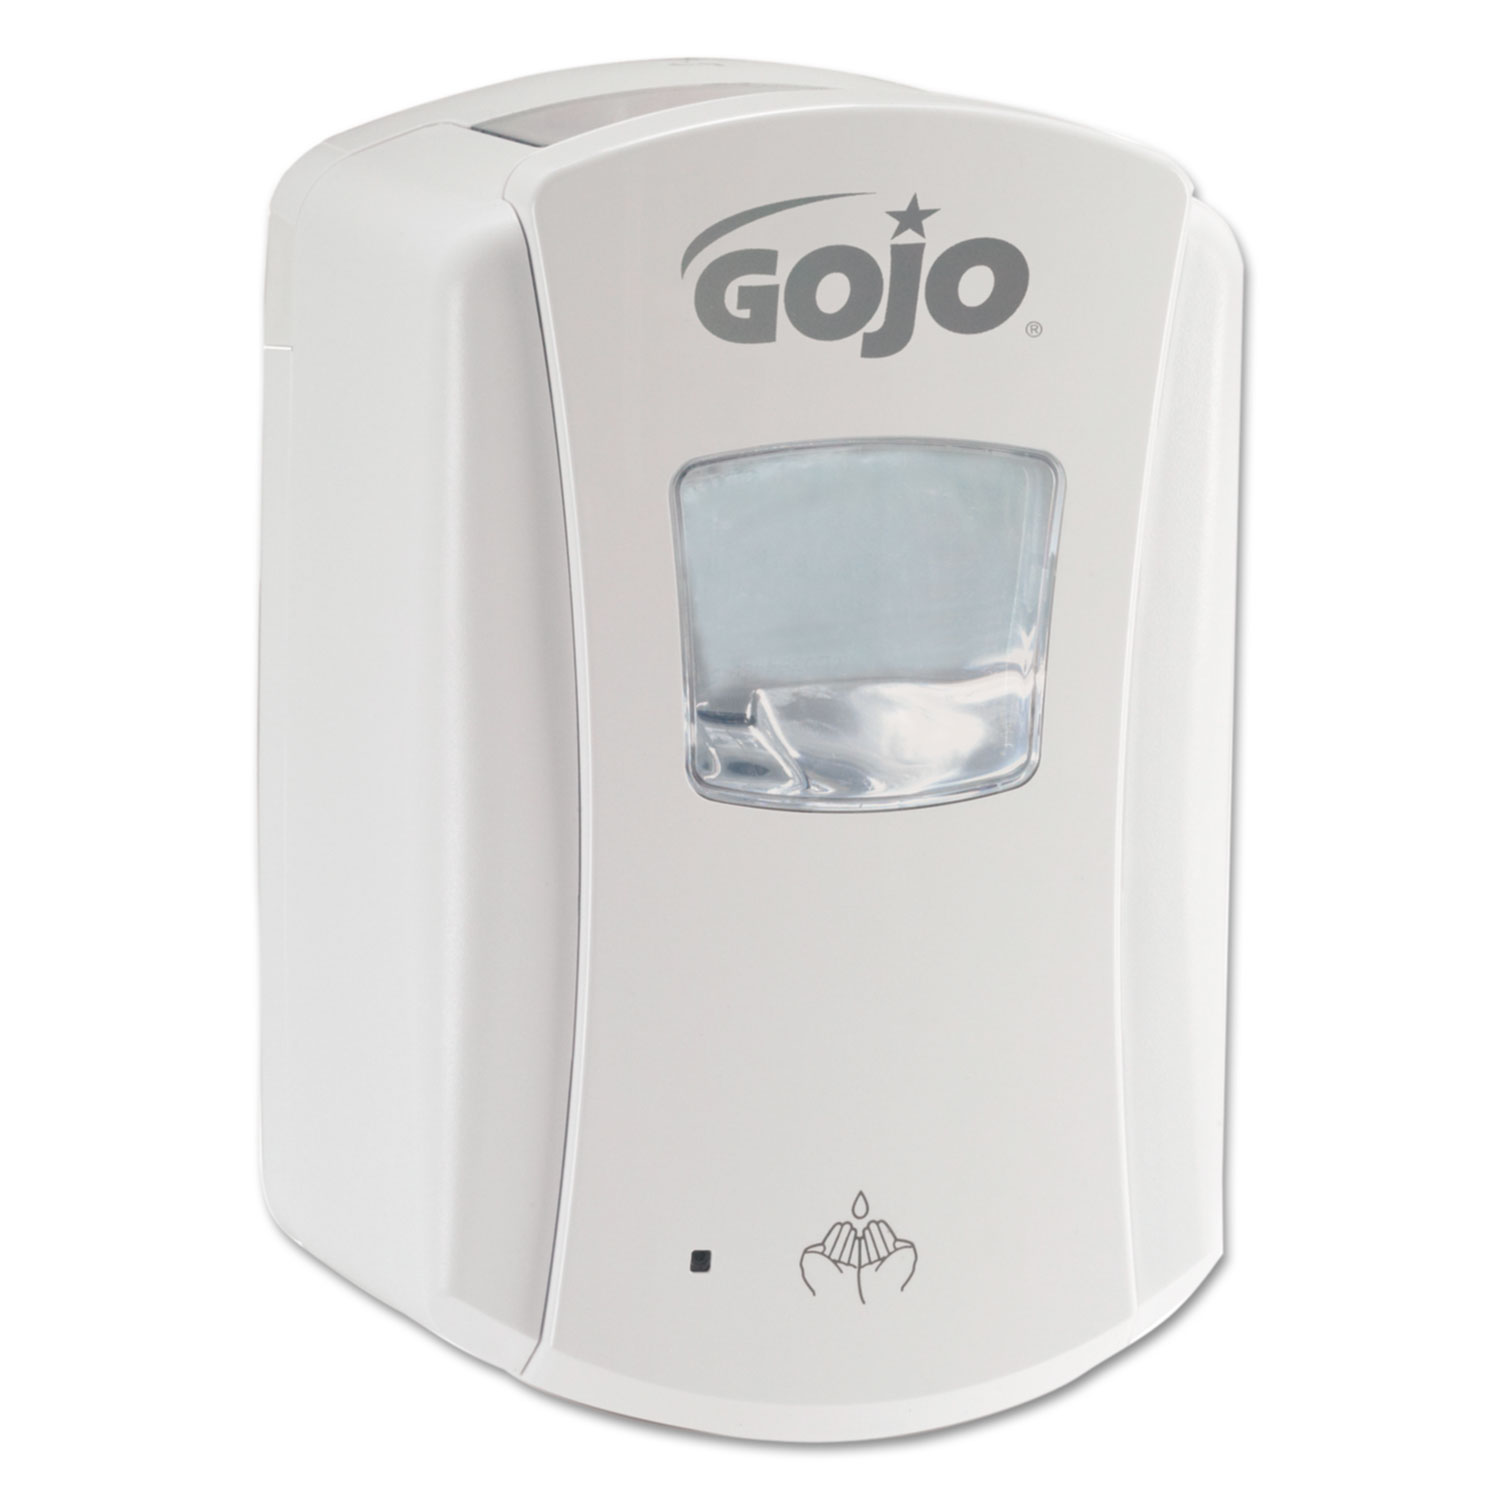  GOJO 1380-04 LTX-7 Dispenser, 700 mL, 5.75 x 4 x 8.5, White (GOJ138004) 